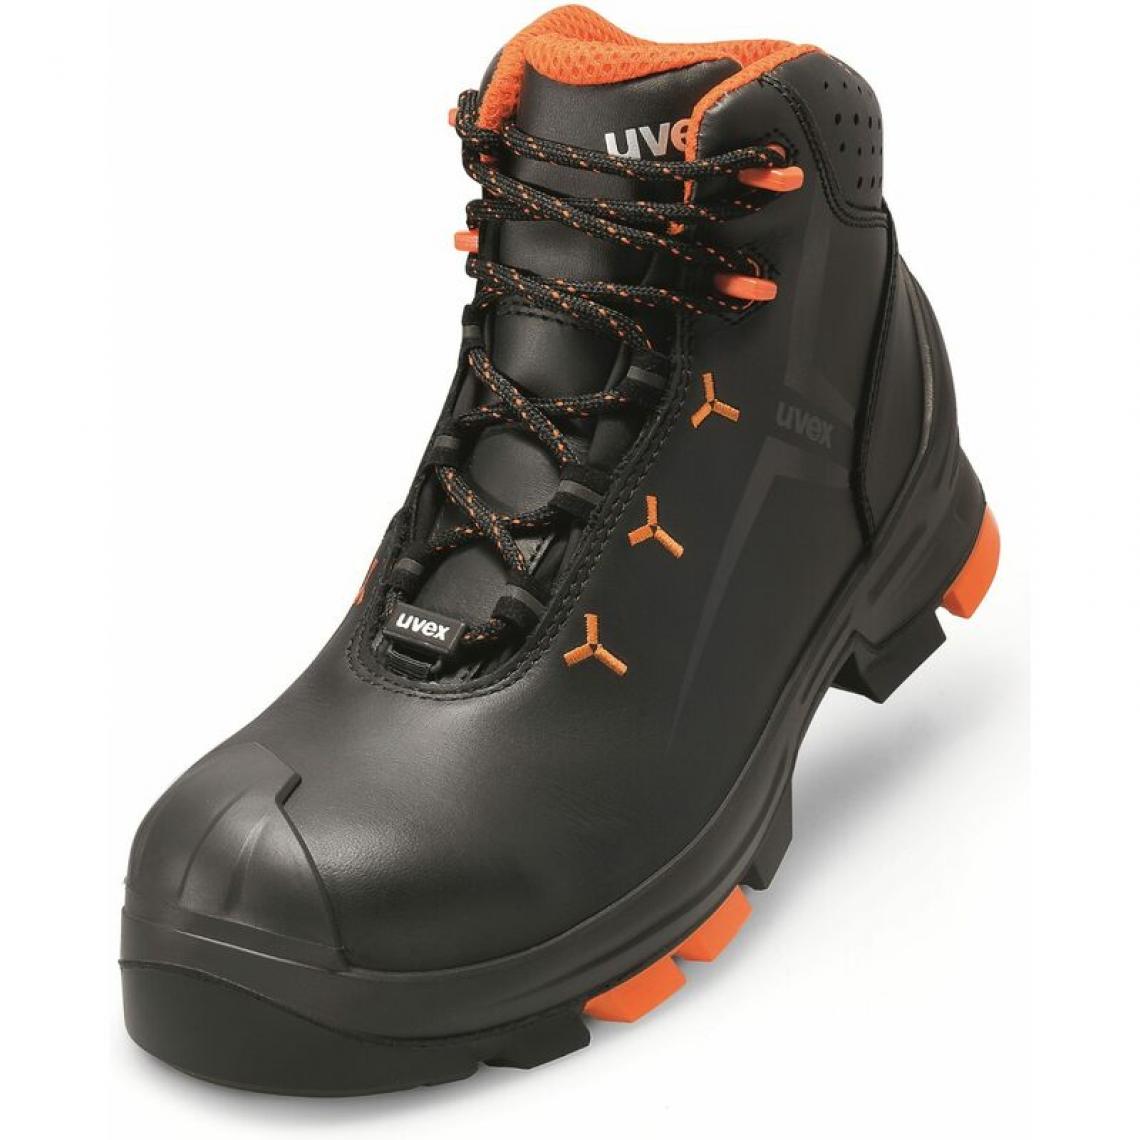 Uvex - uvex 2 Chaussures montantes S3 SRC, T. 46, noir/orange () - Equipement de Protection Individuelle